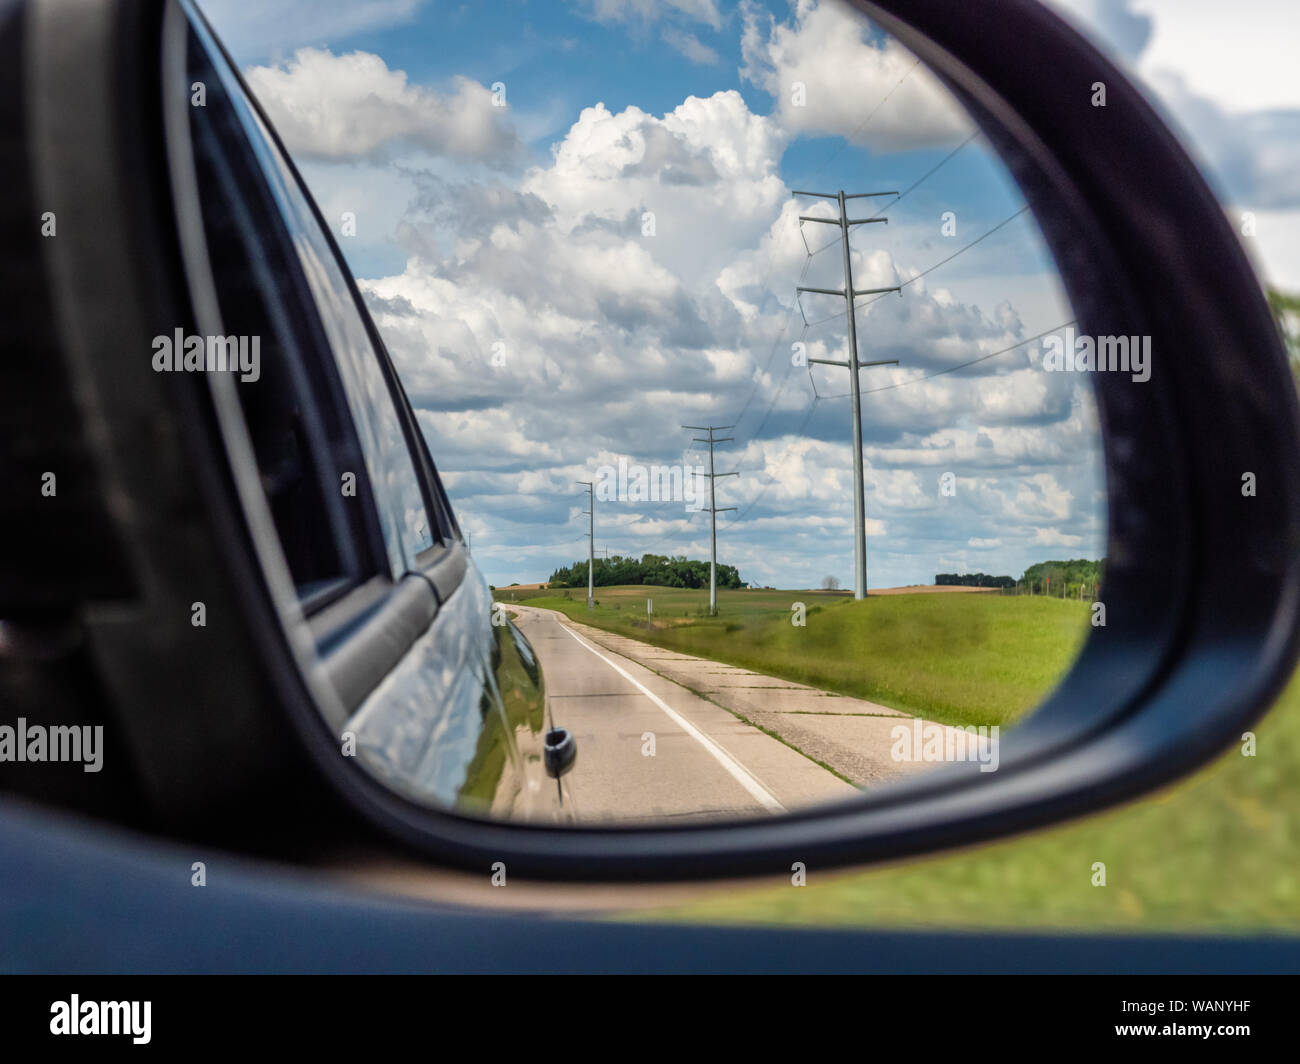 Auto-Rückansicht Spiegel Autoteil Ersatzteil außen-Spiegel-Außenspiegel  Spiegel Symbol Reflexion Reflexion Vorsicht hinsichtlich Stockfotografie -  Alamy